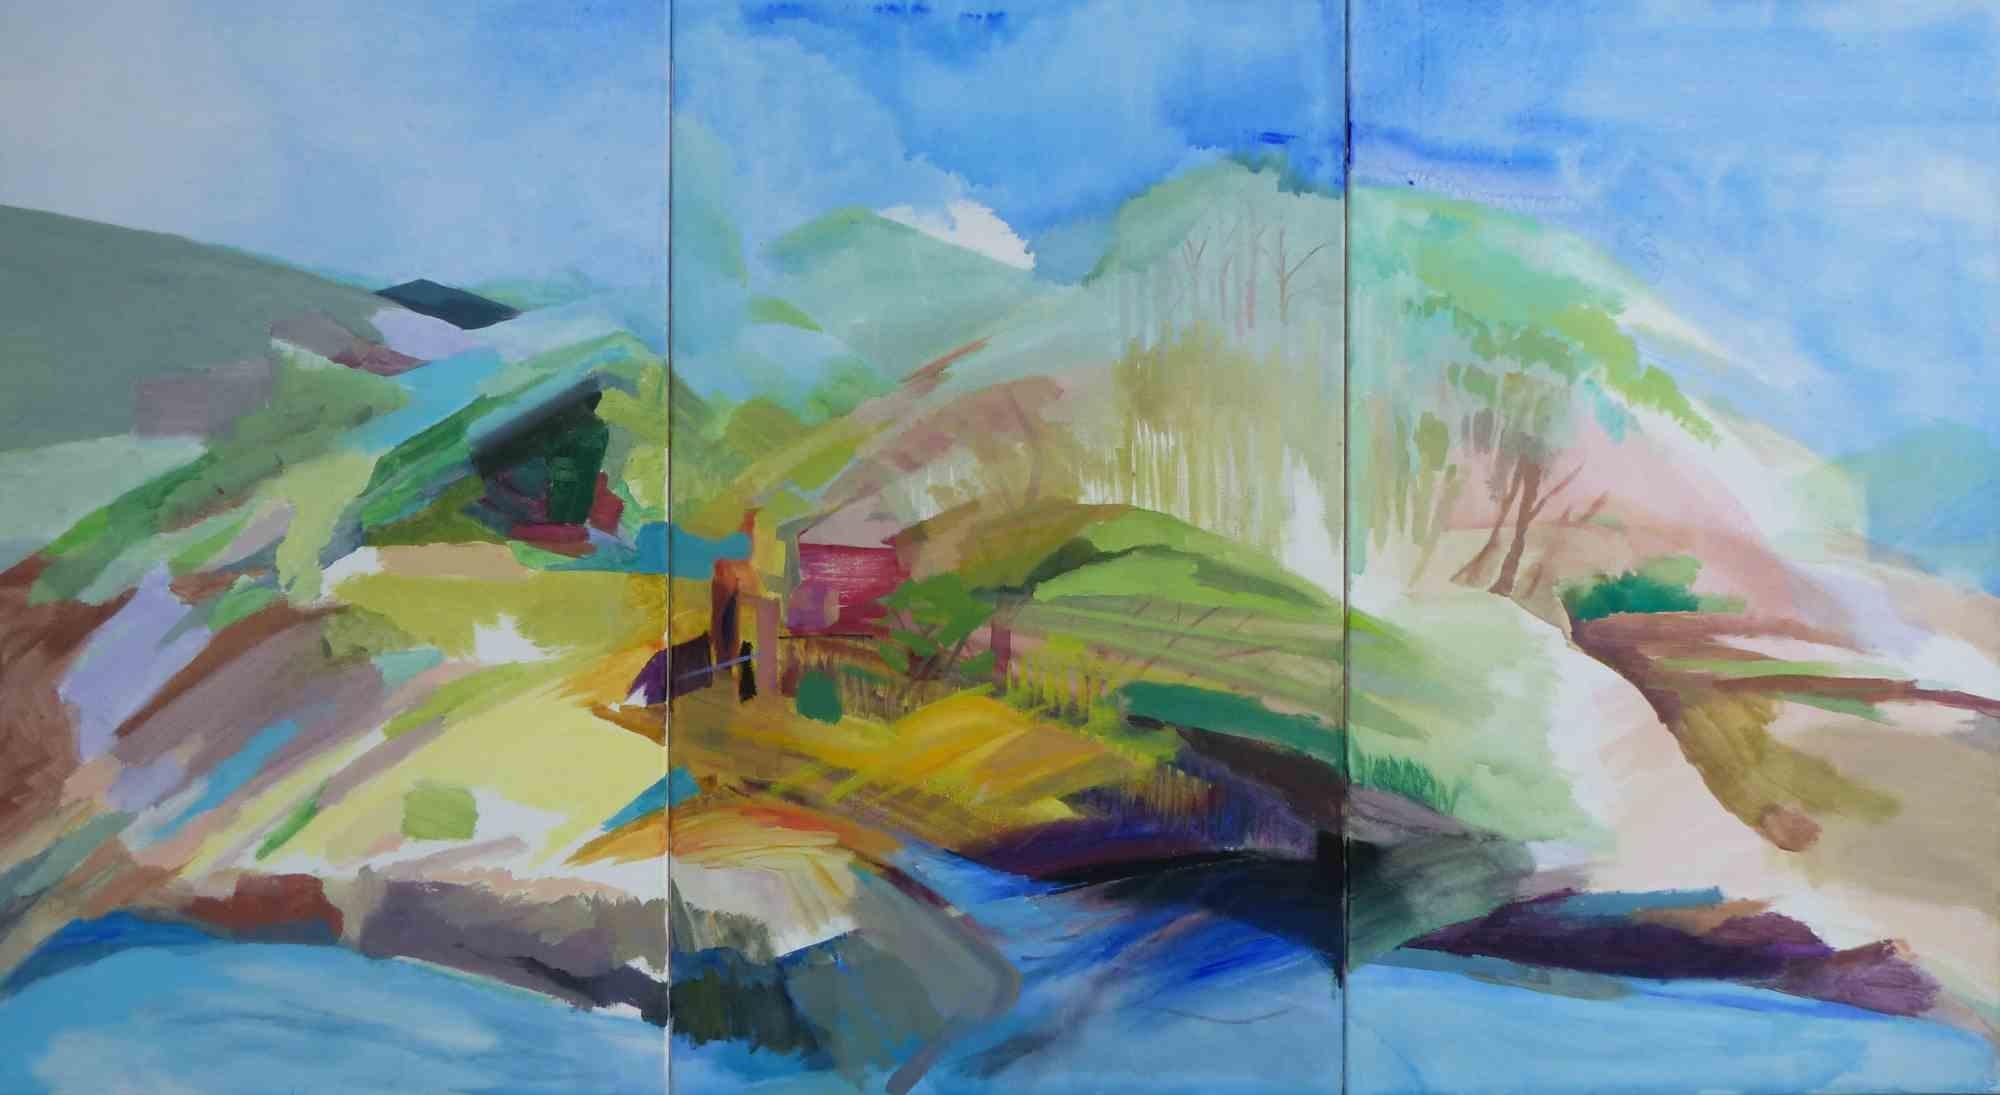 Die von Johanna Winkelgrund in den 2020er Jahren gemalten Landschaften sind abstrakt und gegenständlich.

Allein der Farbe folgend, verzichtet sie hier auf die menschliche Figur.

Nur in wenigen Ausnahmen sind Spuren menschlicher Existenz zu